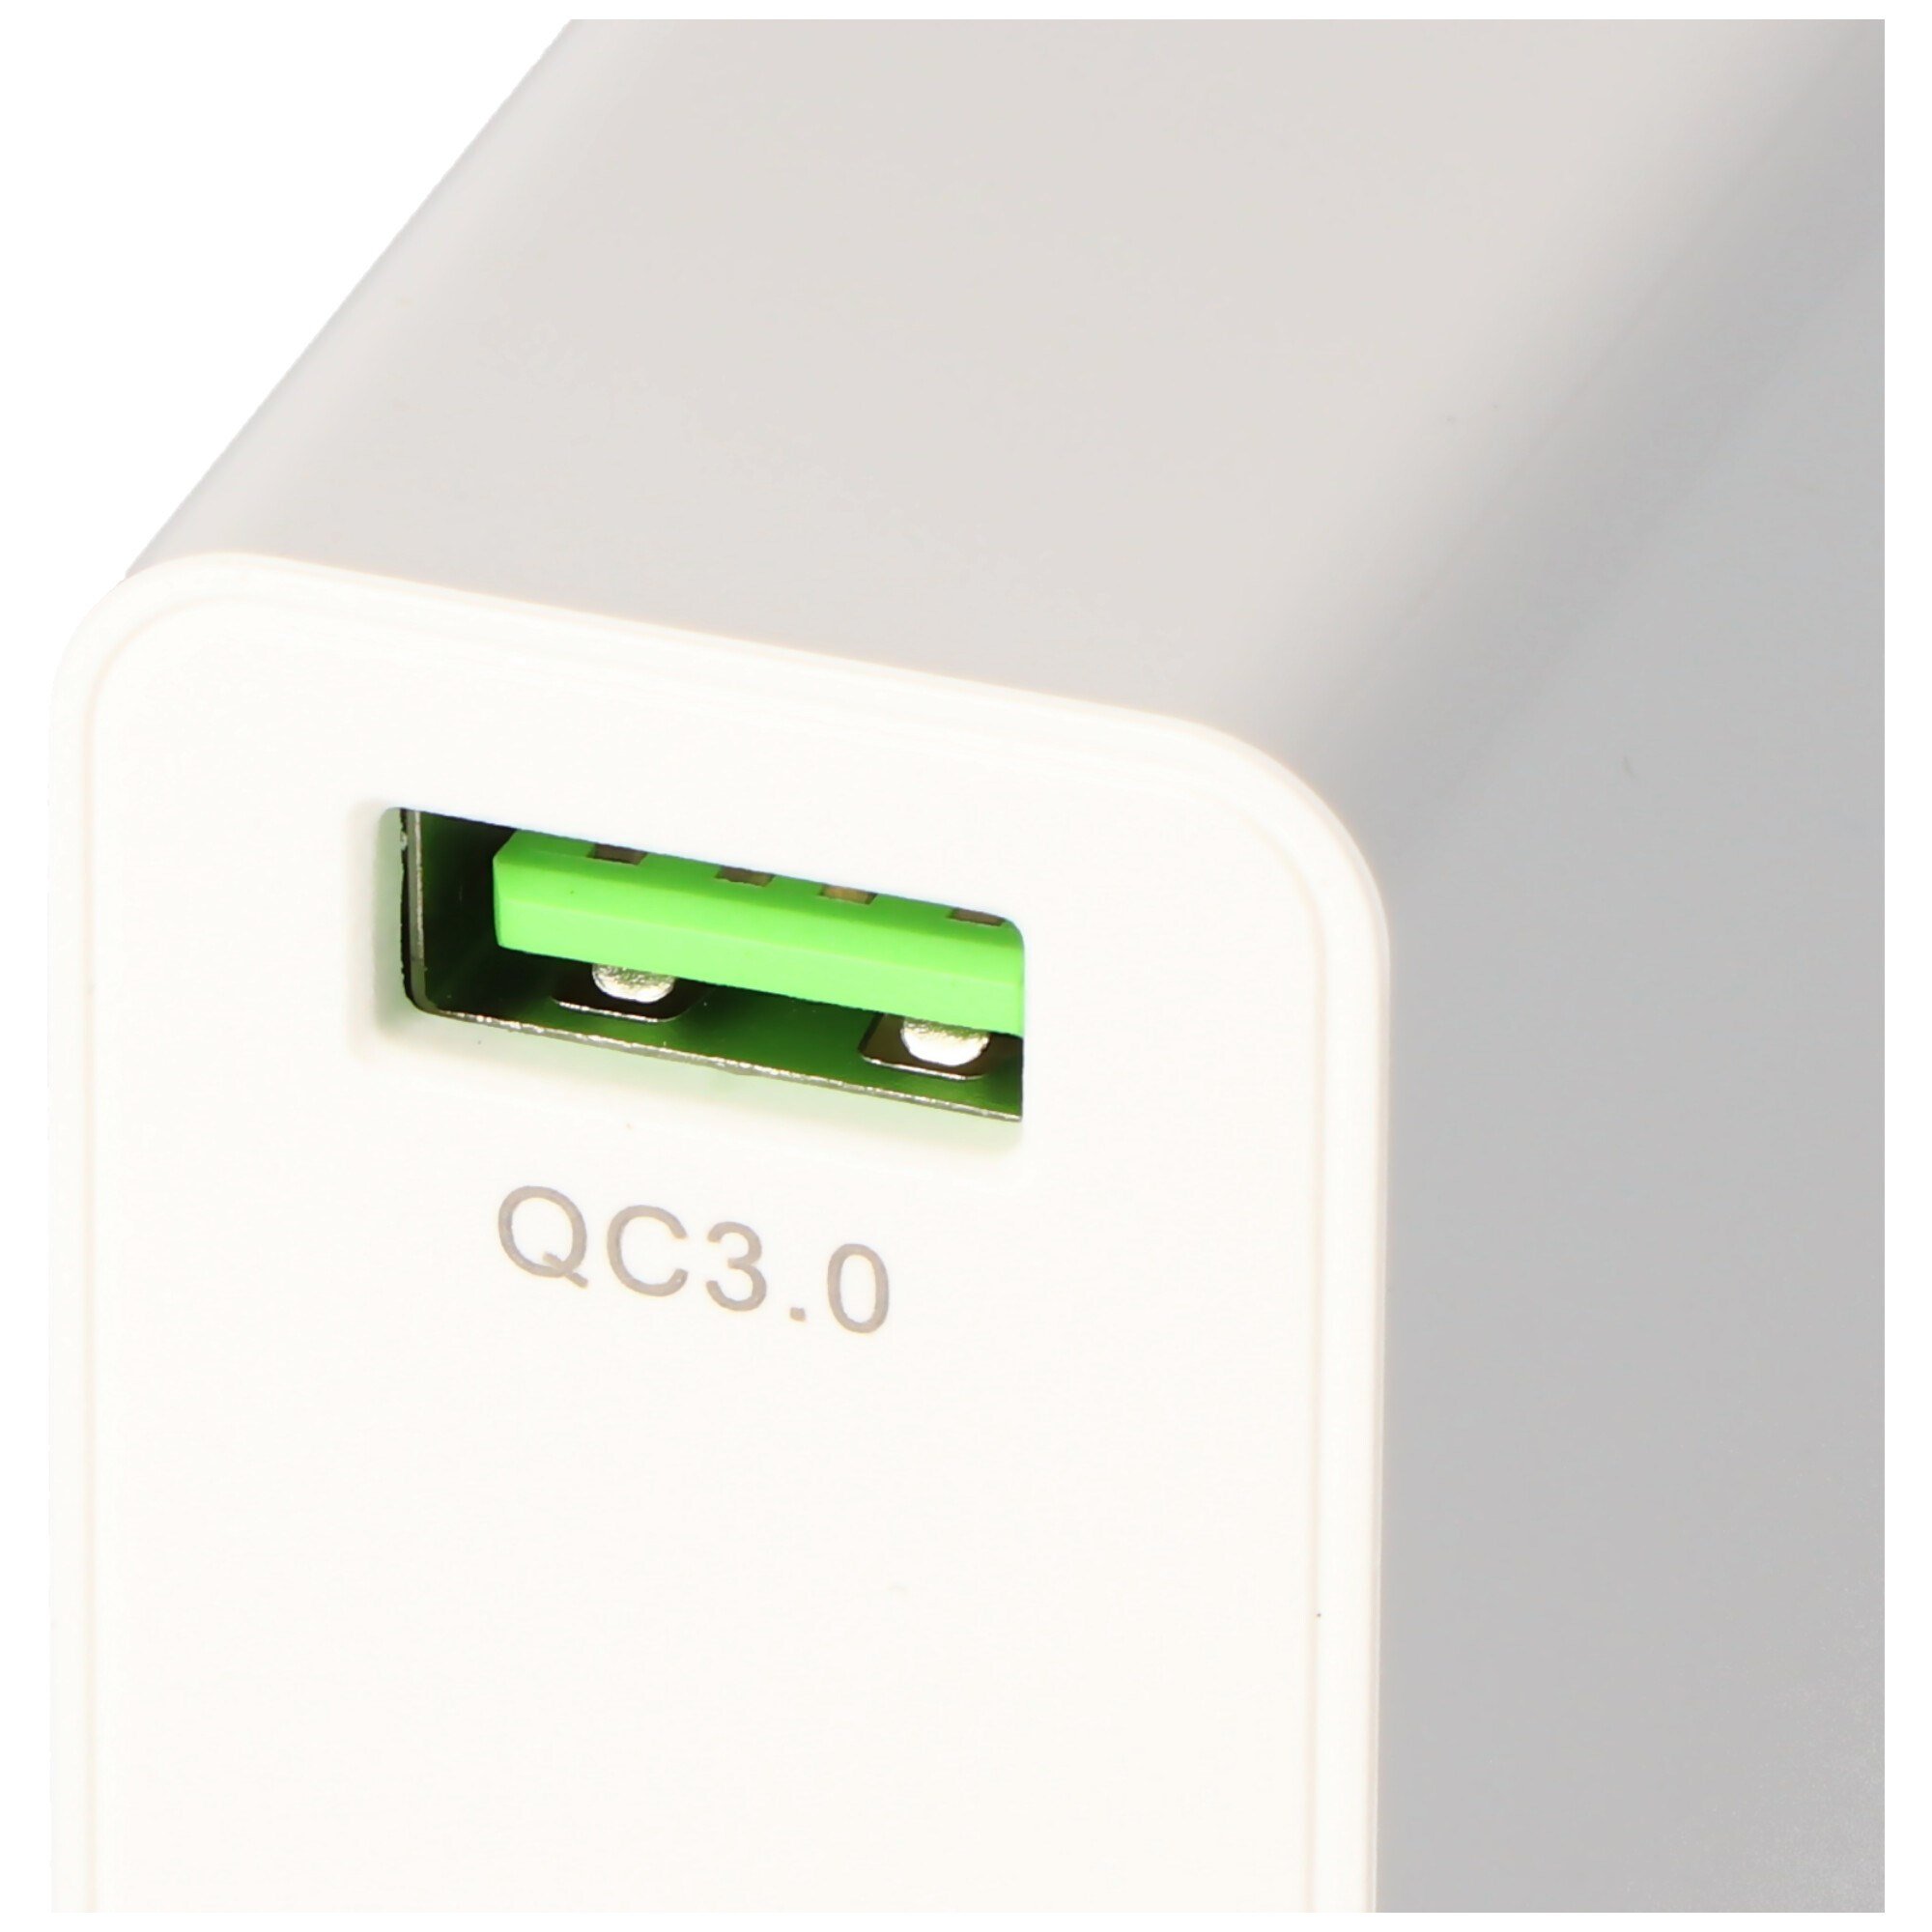 USB hızlı şarj cihazı QC3.0 18W, Hızlı Şarj USB güç kaynağı, beyaz